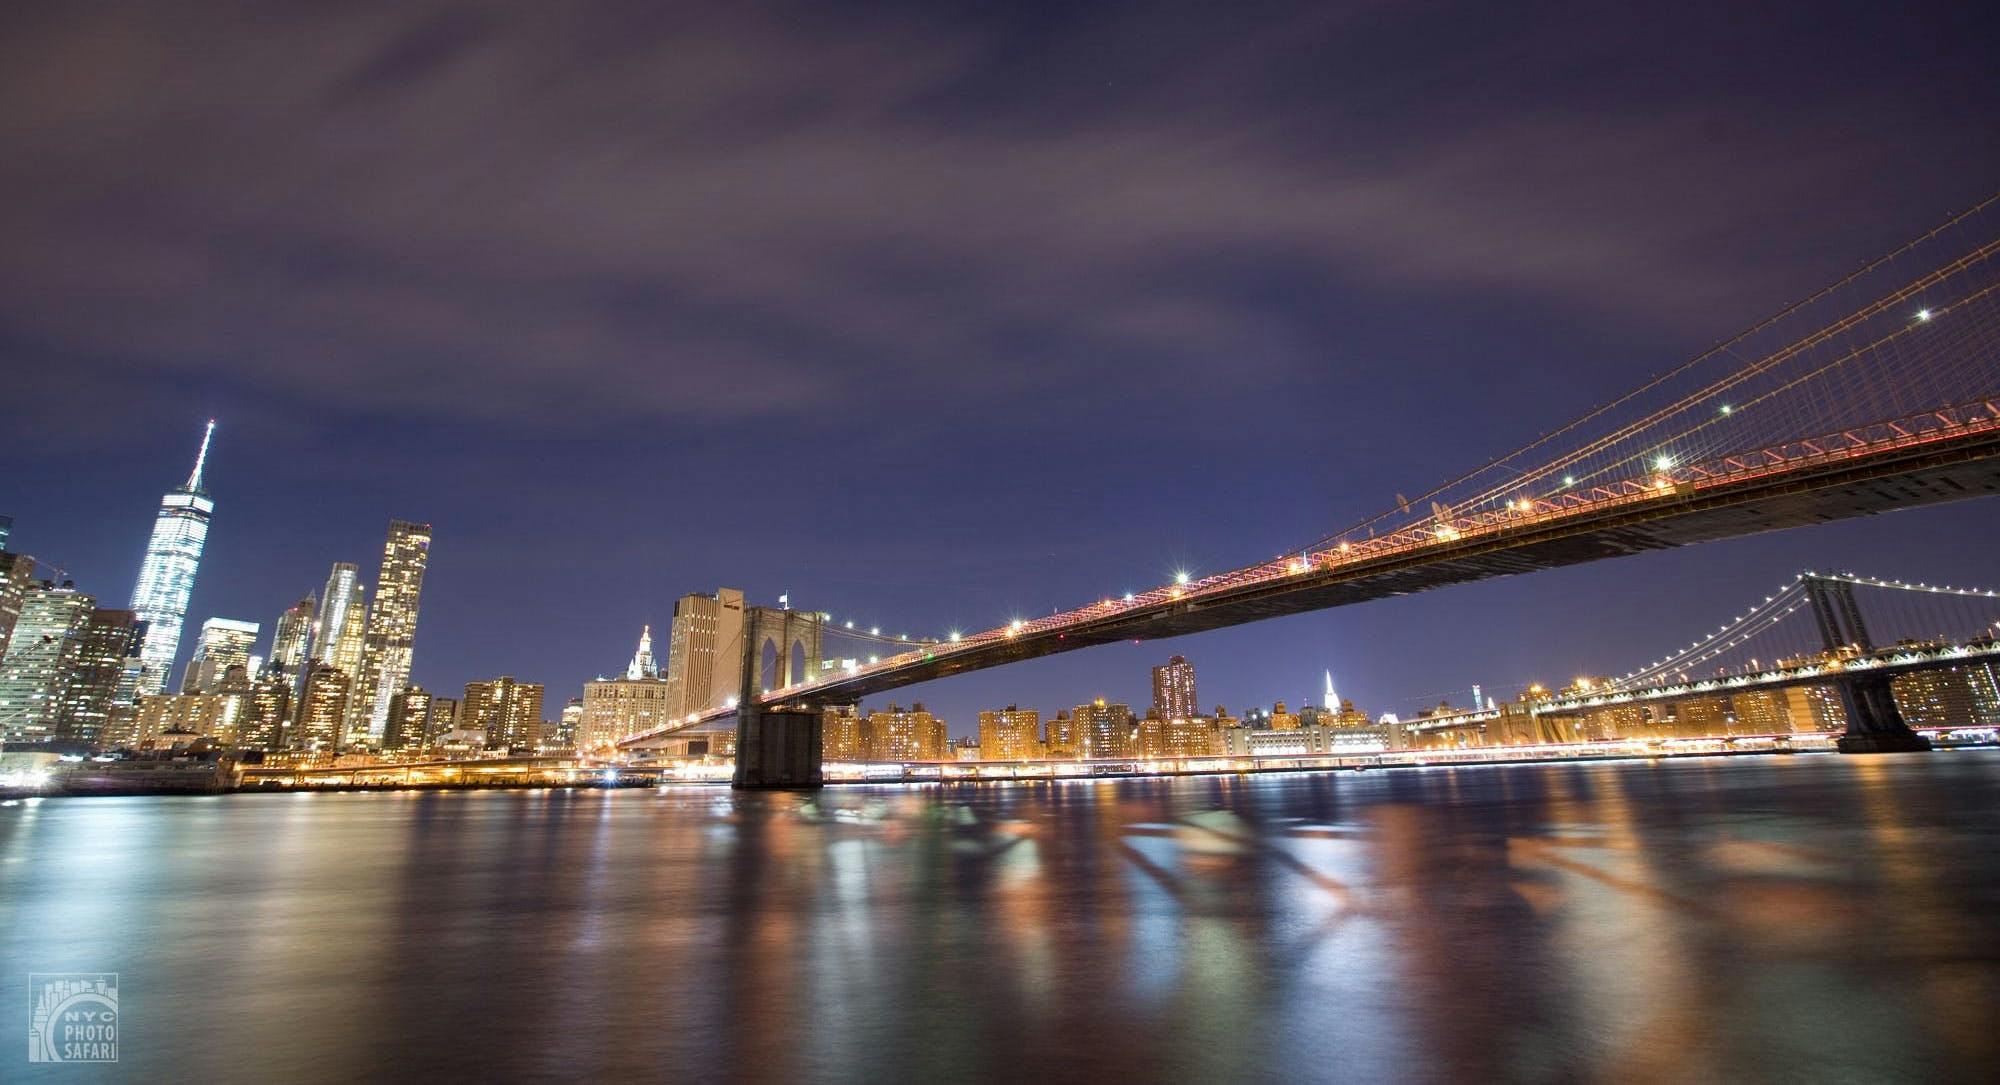 Tour de fotografía nocturna en el Puente de Brooklyn